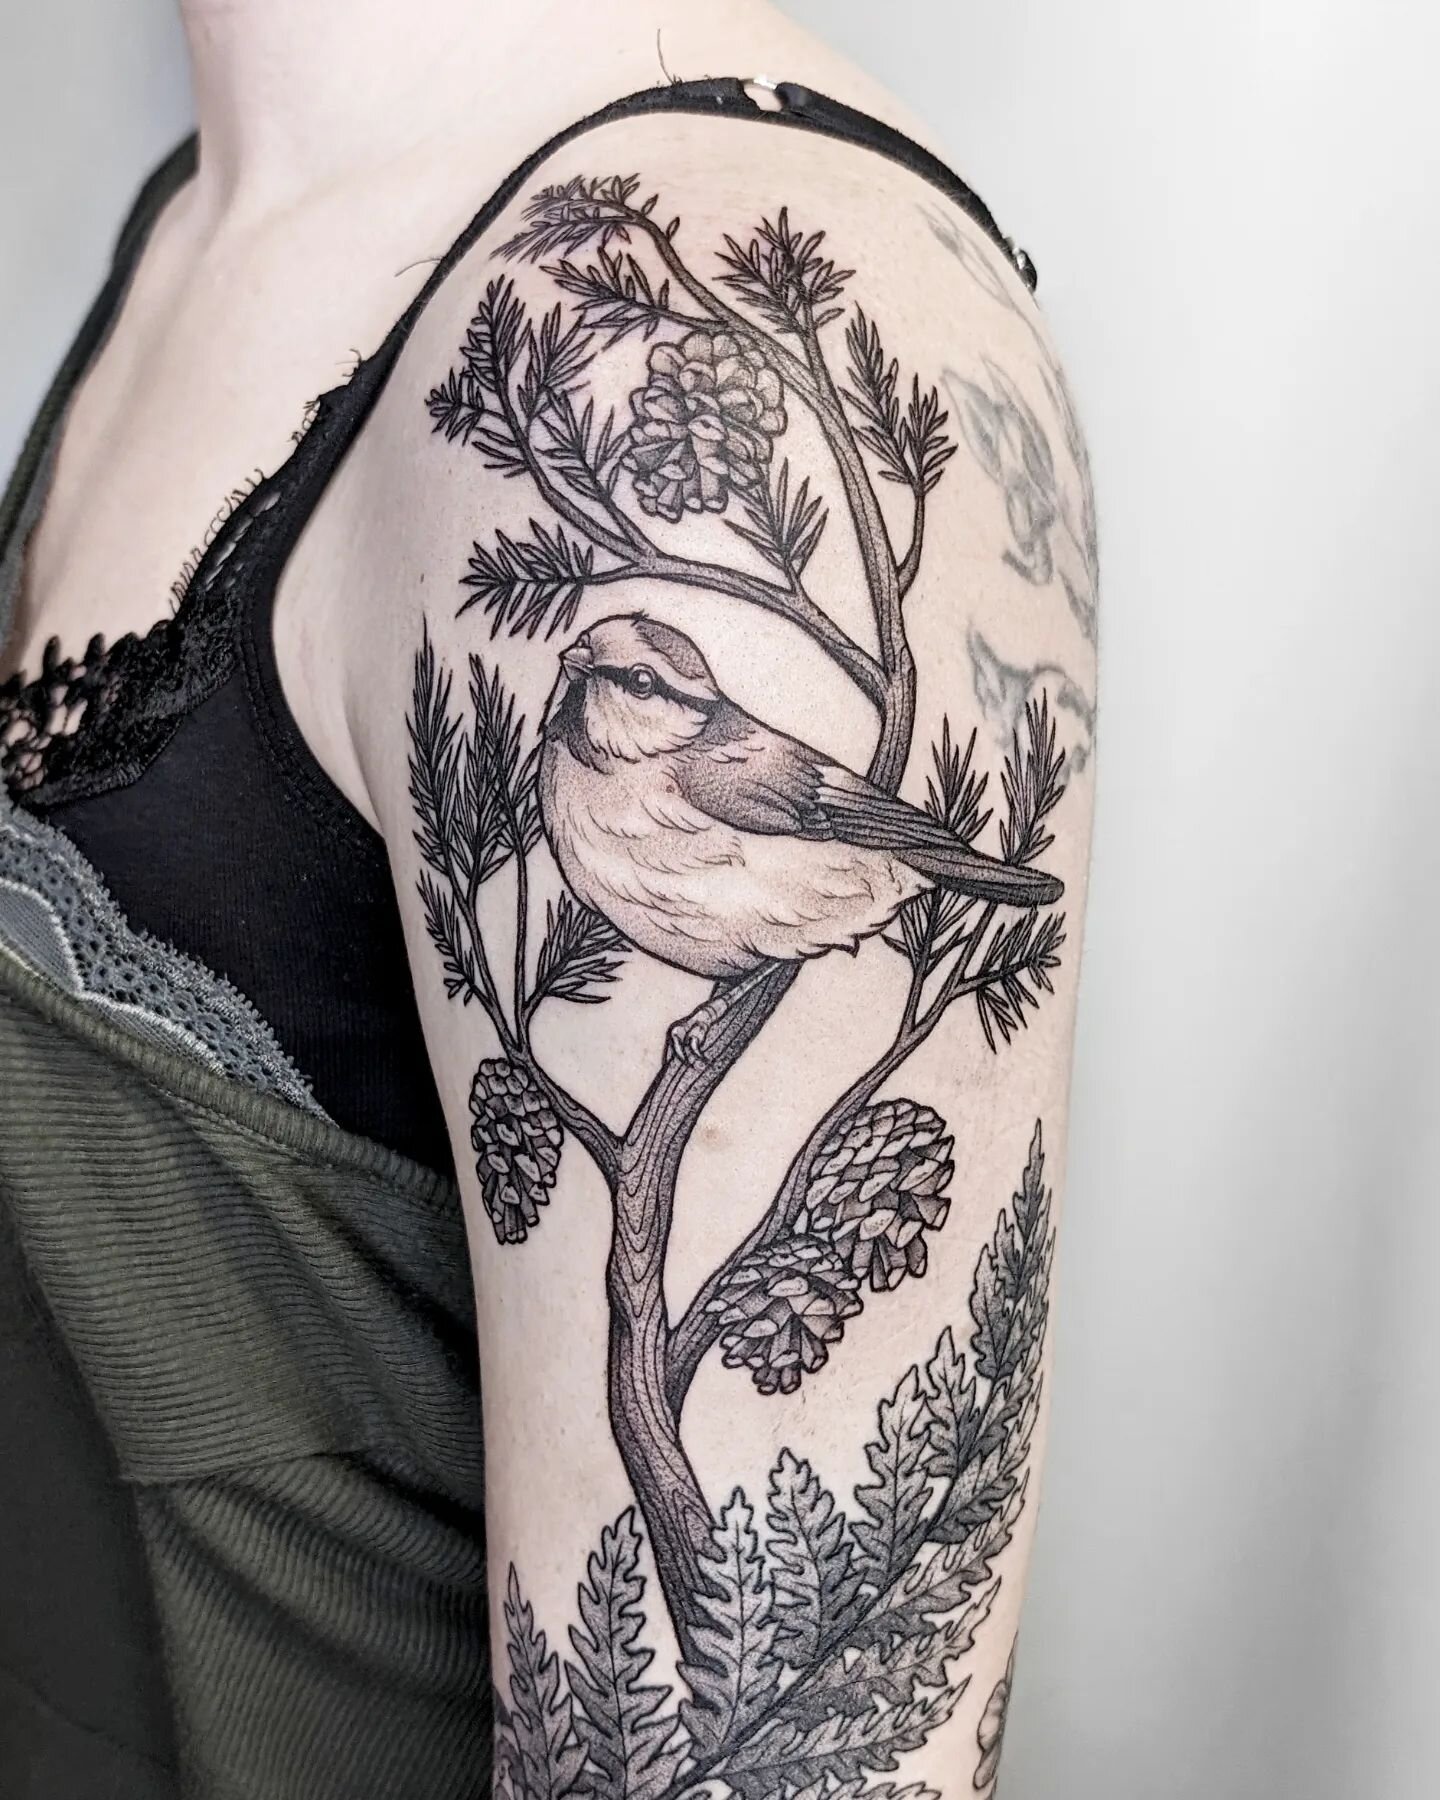 Cute birdie on a branch 🐦

For appointments:
DM or e.swan.art@outlook.com

#tattoo #tattooart #tattooartist #tattooist #ink #inked #berlin #berlintattoo #tattoolife #tattoolove
#latvianartist #latviantattooartist #art #bird #birdtattoo #forest #arti